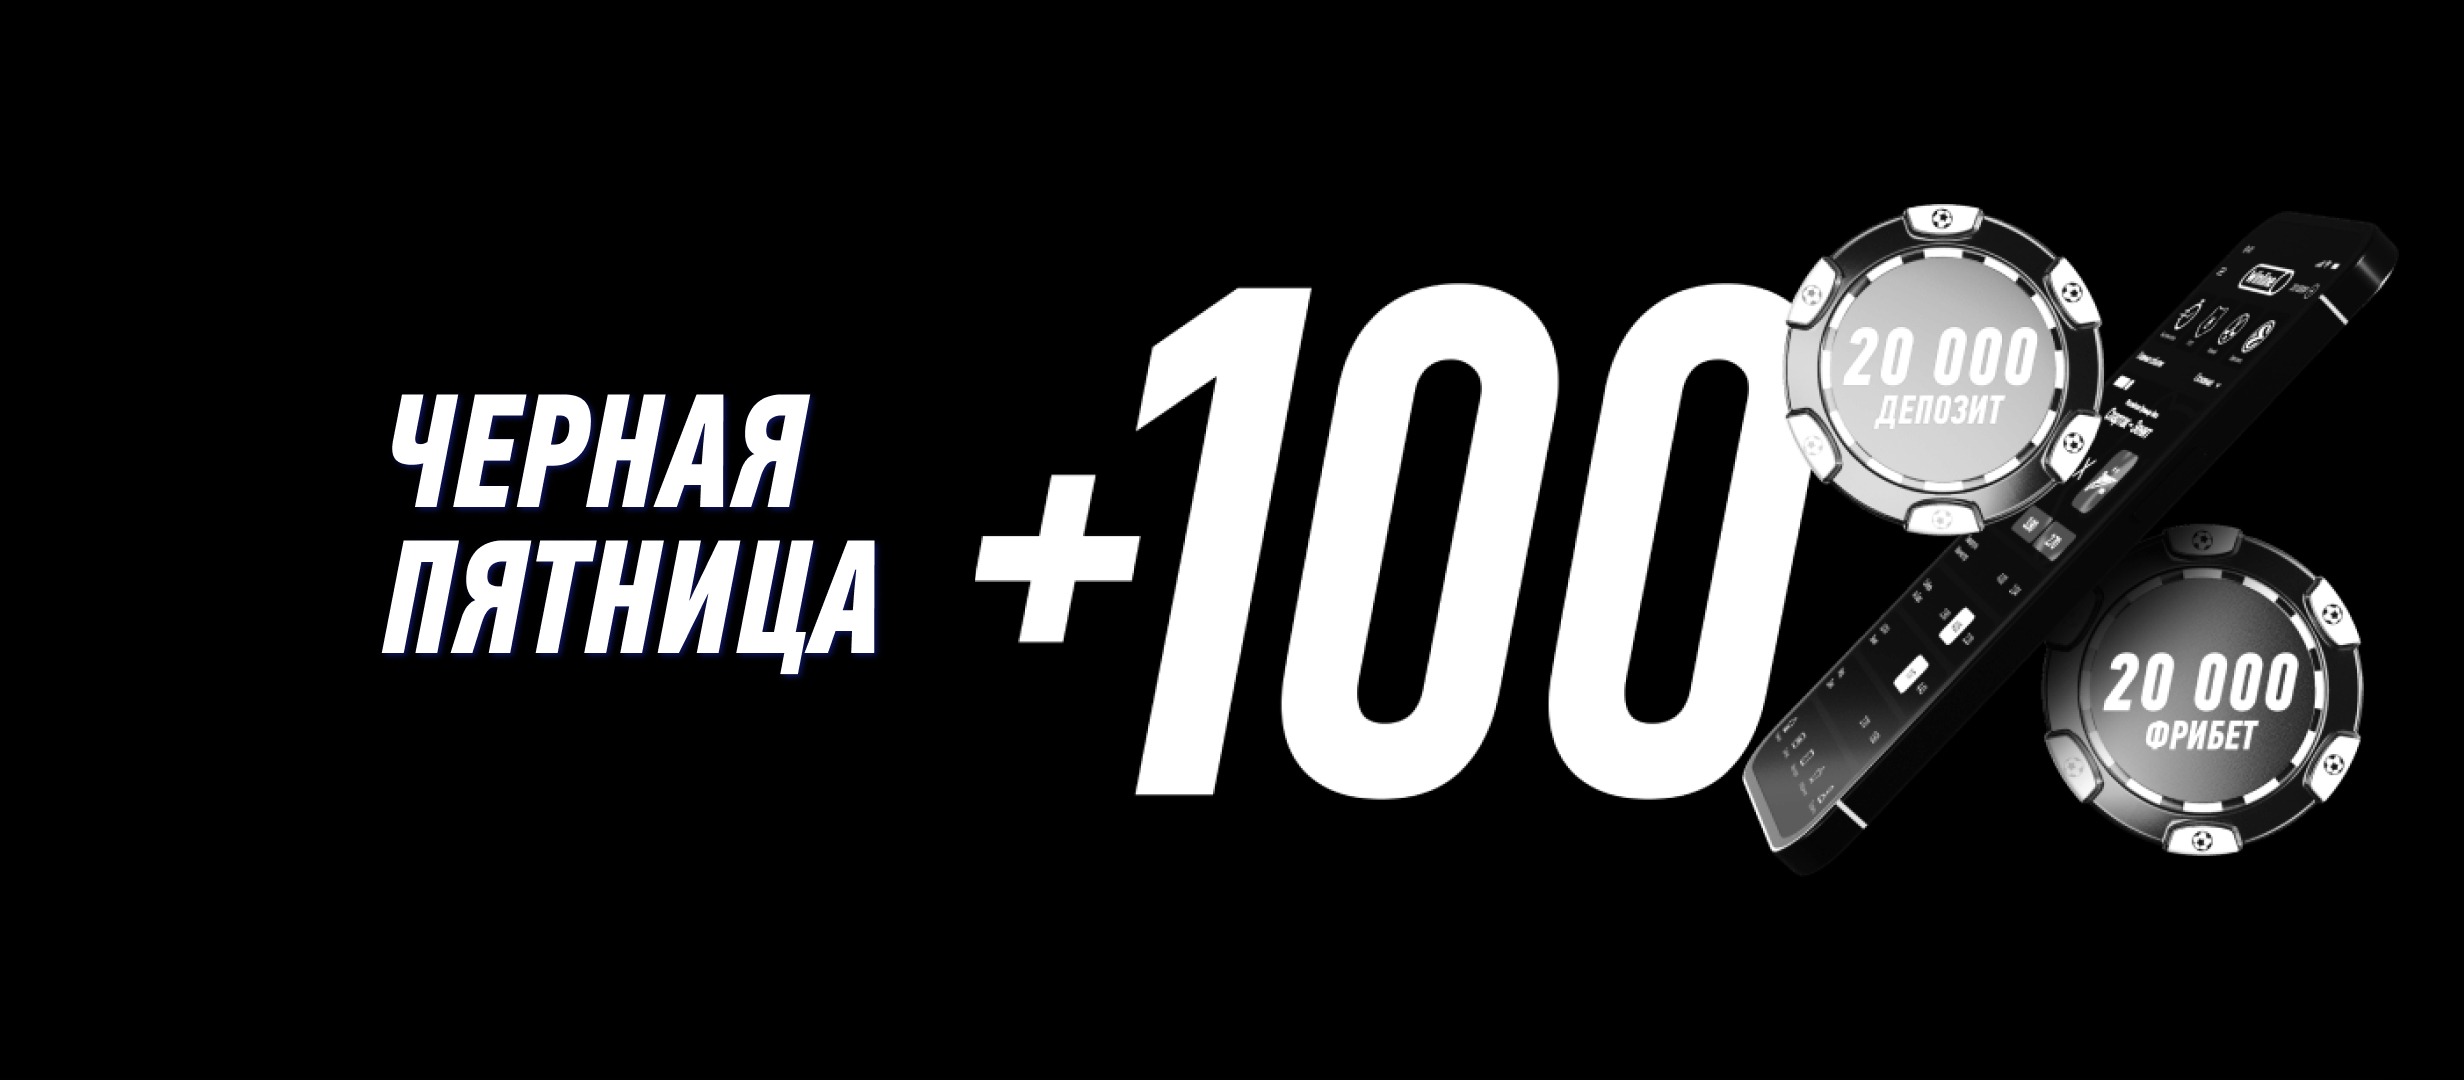 BK Winline nachislyaet novym klientam fribet do 20 000 rublej